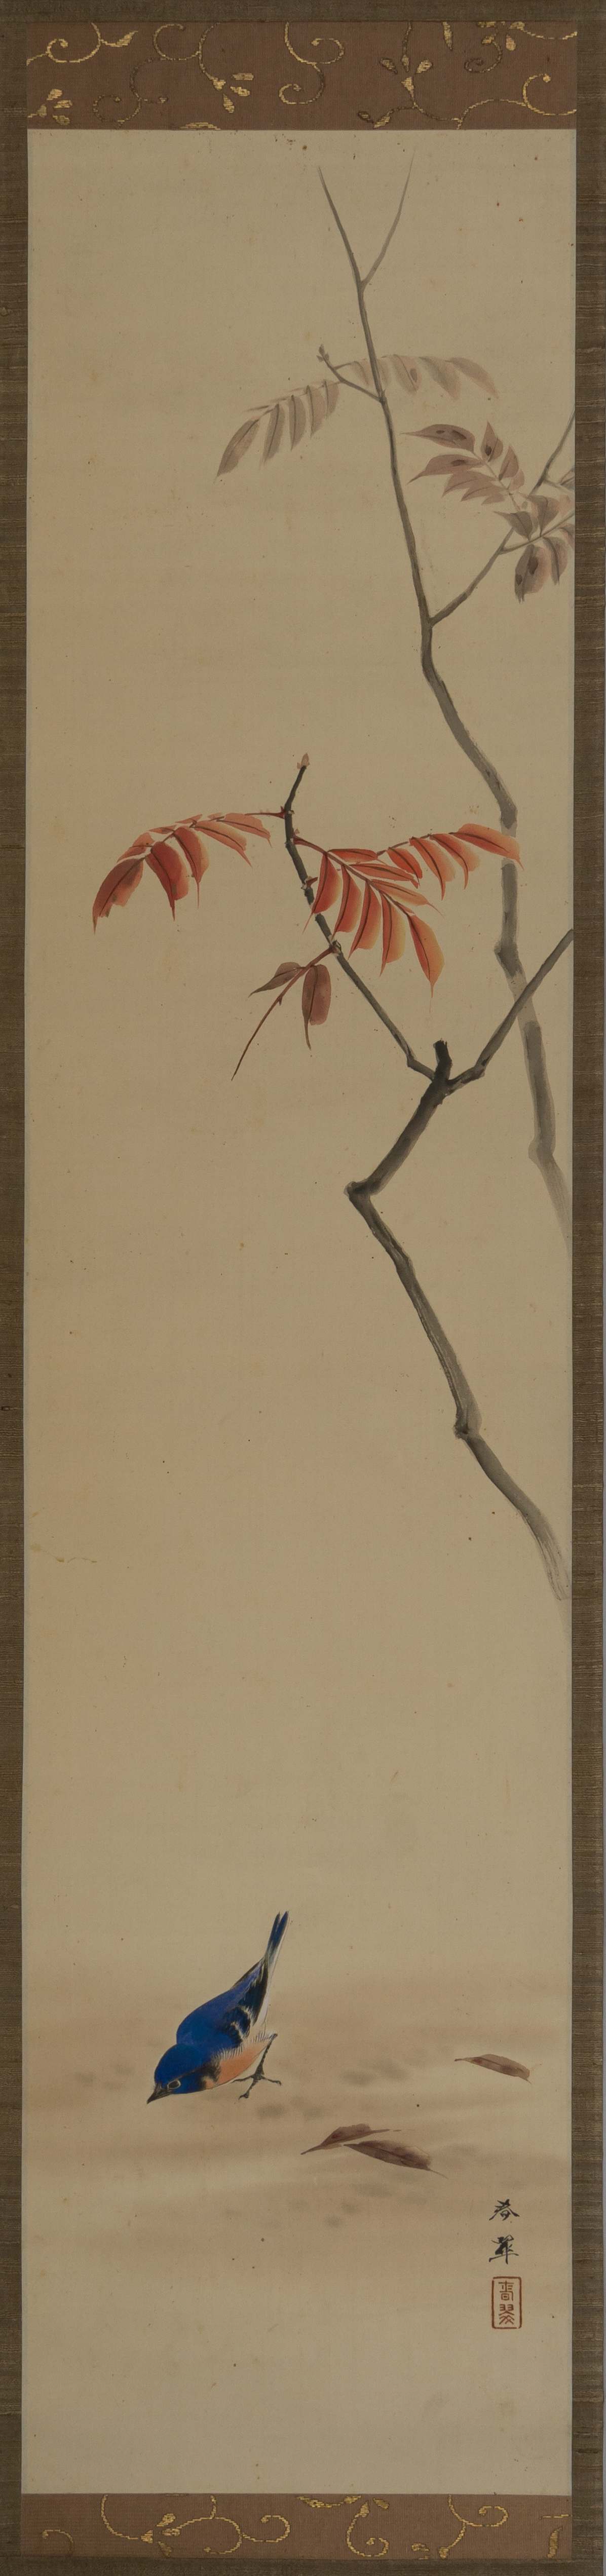 (Коллекция художника Ярослава Титова) Неизвестный художник. Свиток «Ветви». Китай, первая половина XX века.